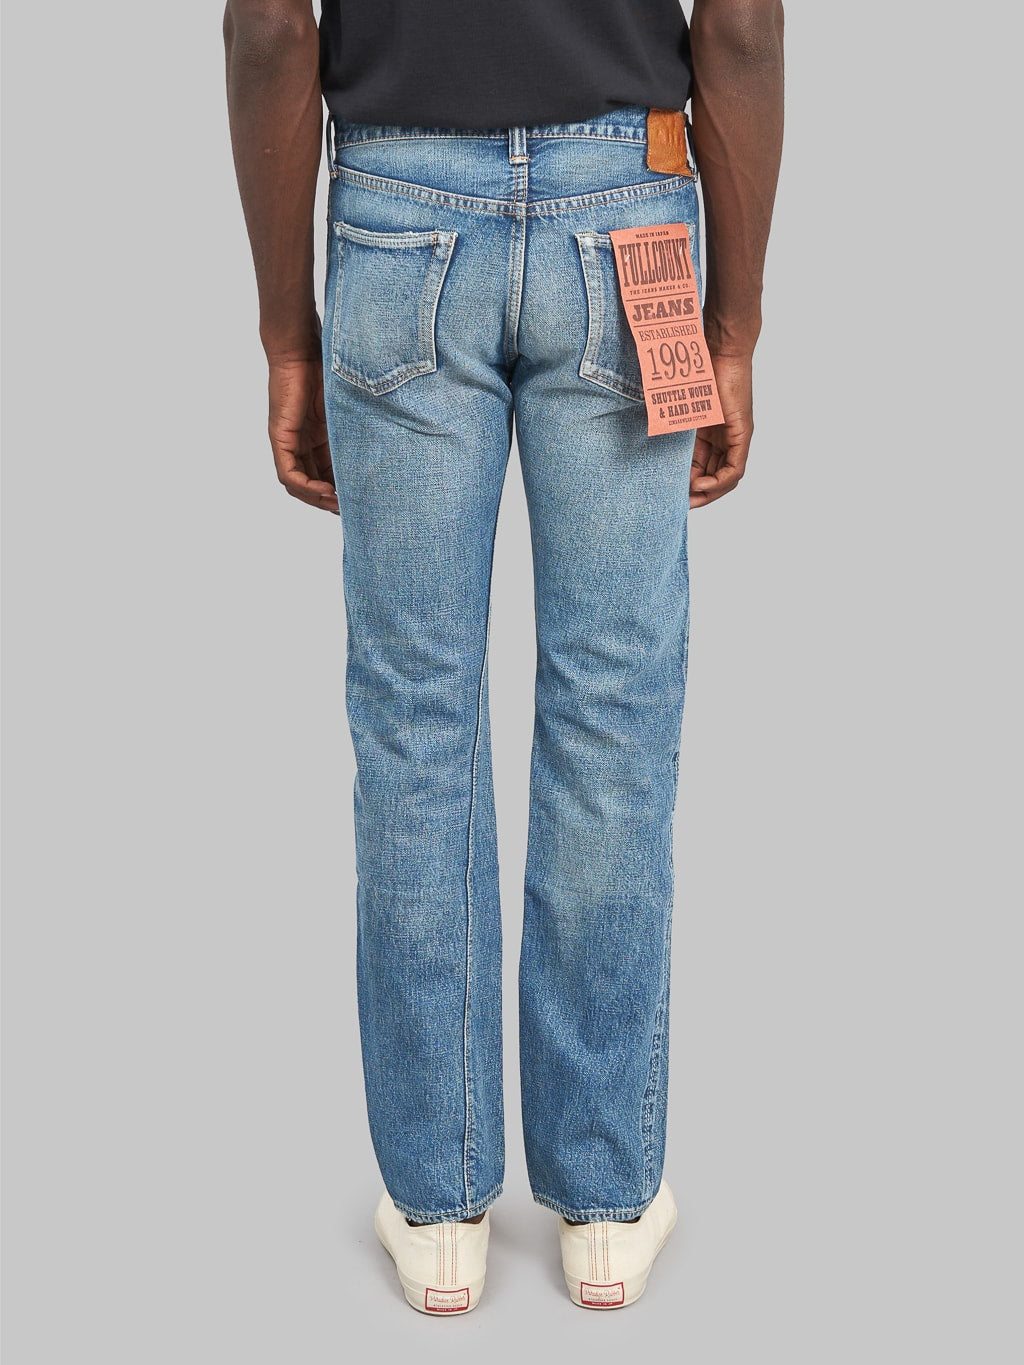 Fullcount 1108 Dartford Slim Straight Jeans back rise